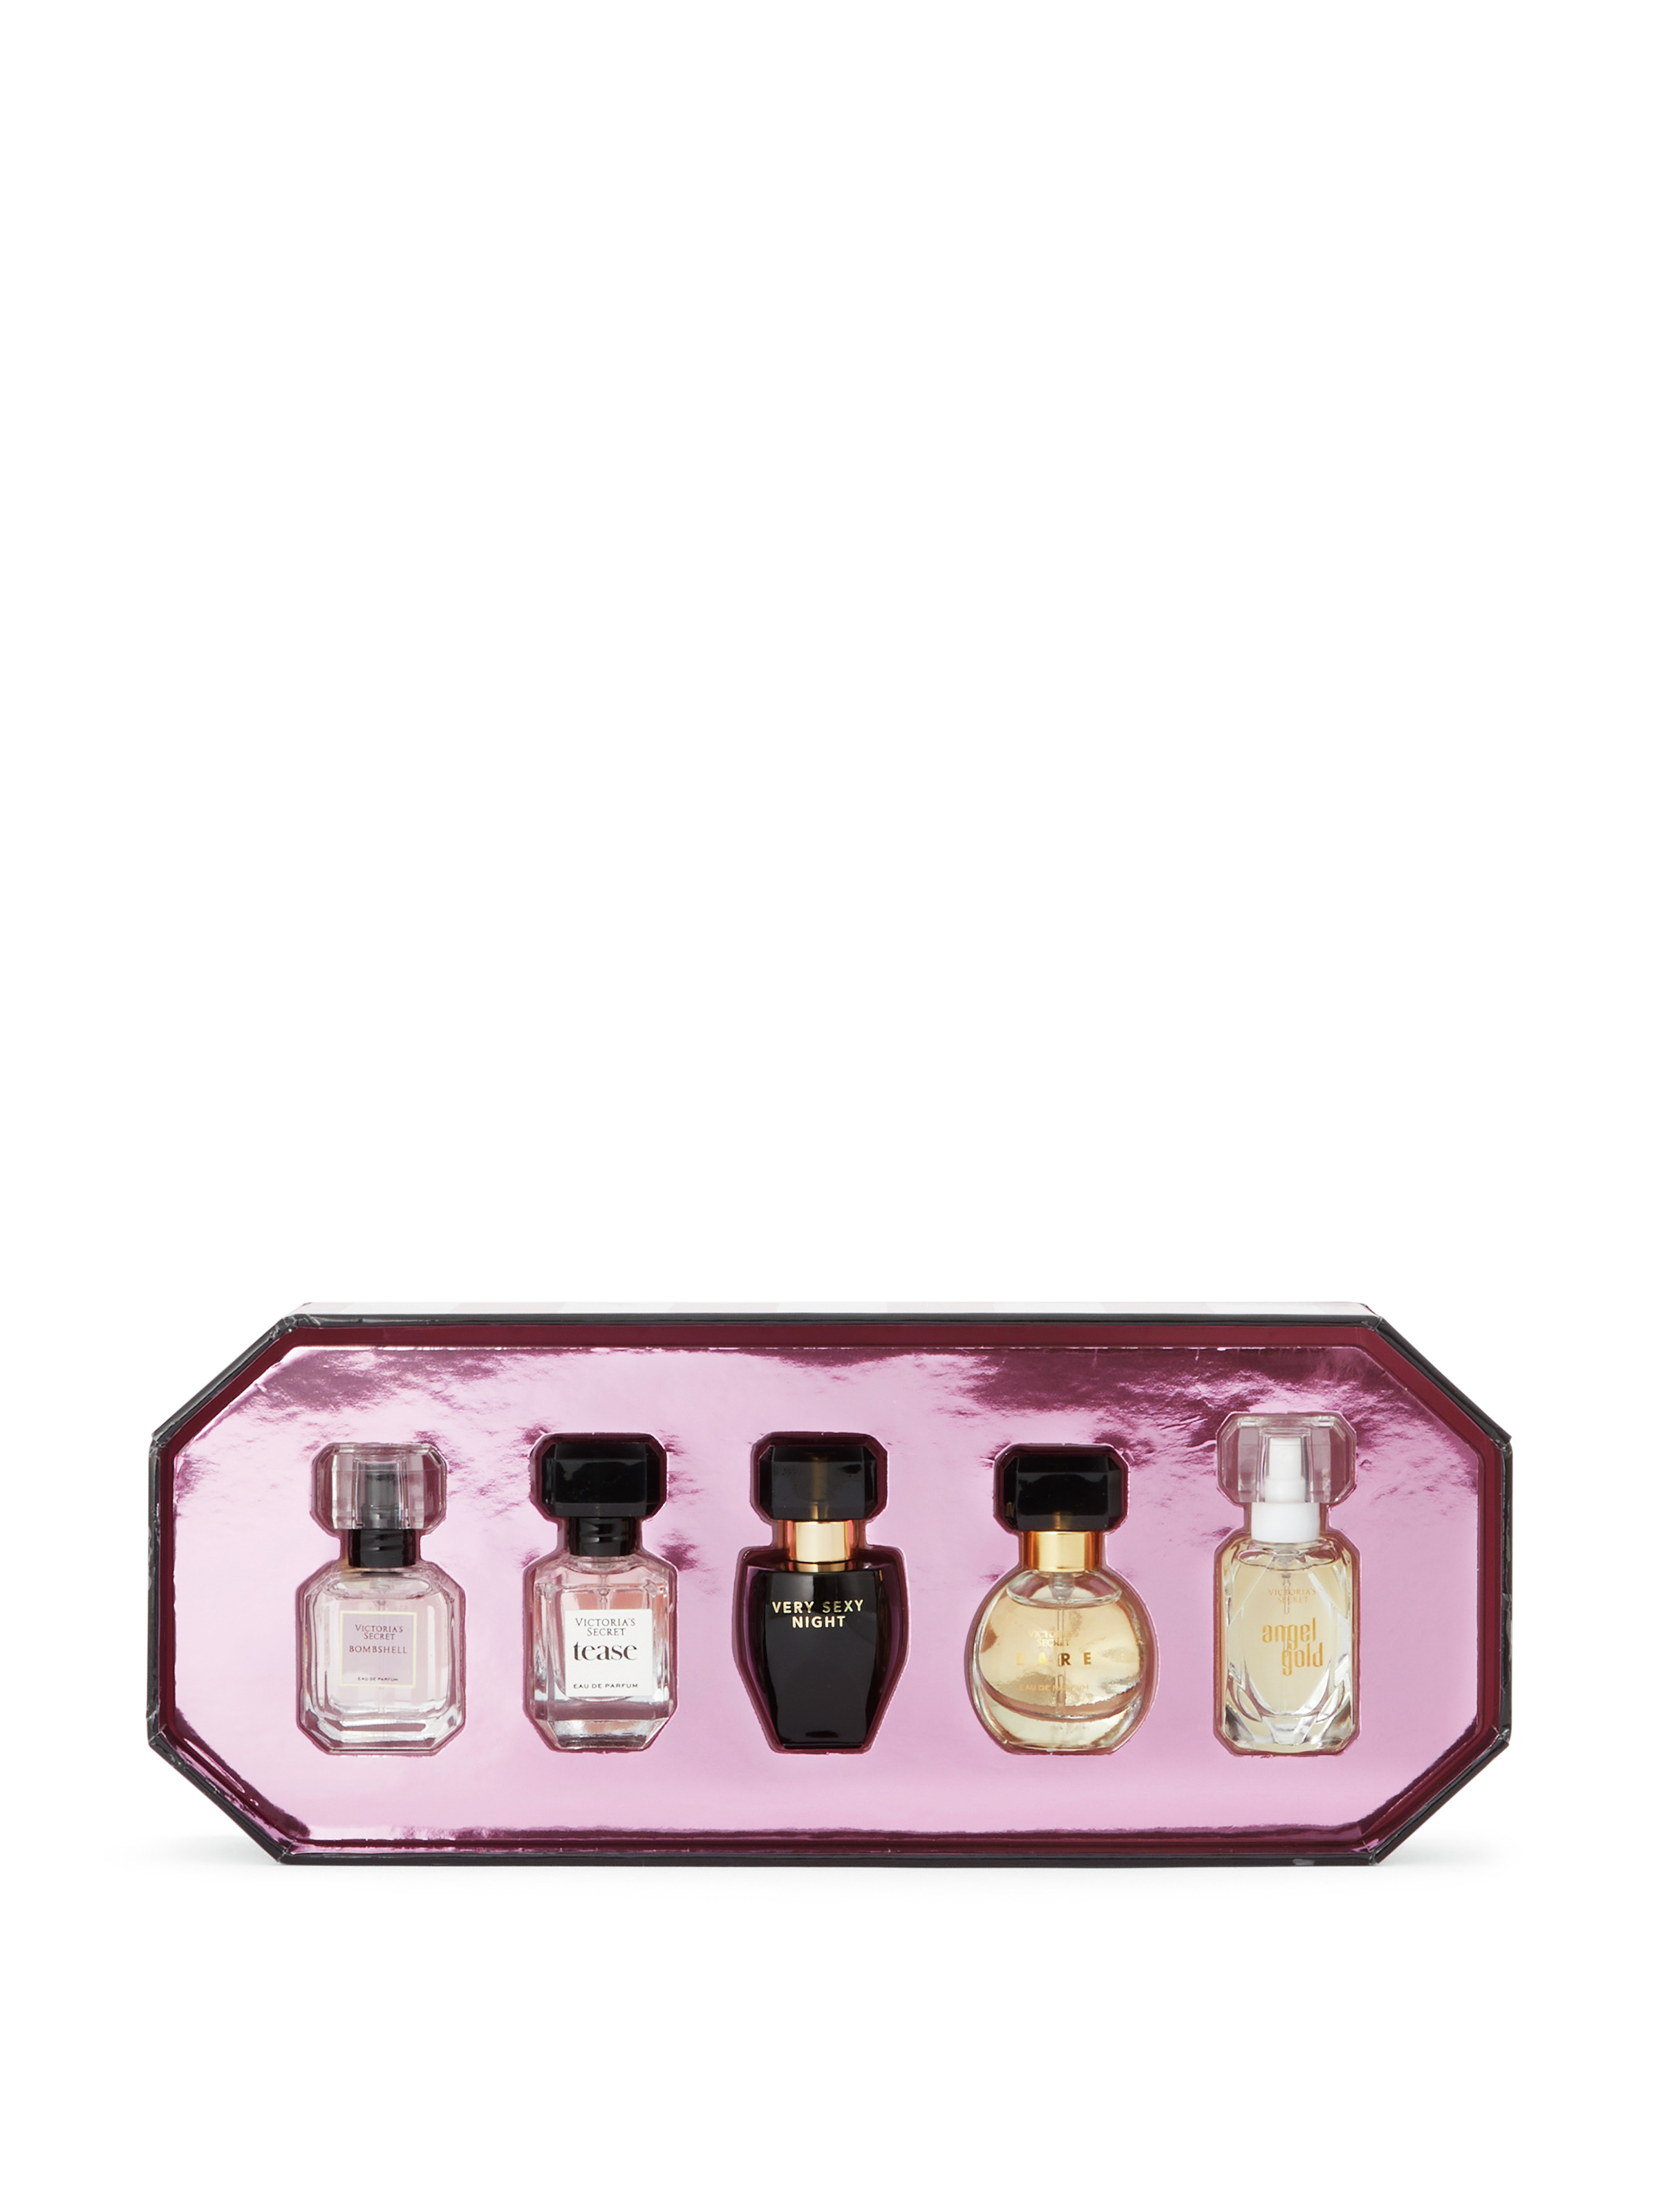 Victoria's Secrets Perfumes